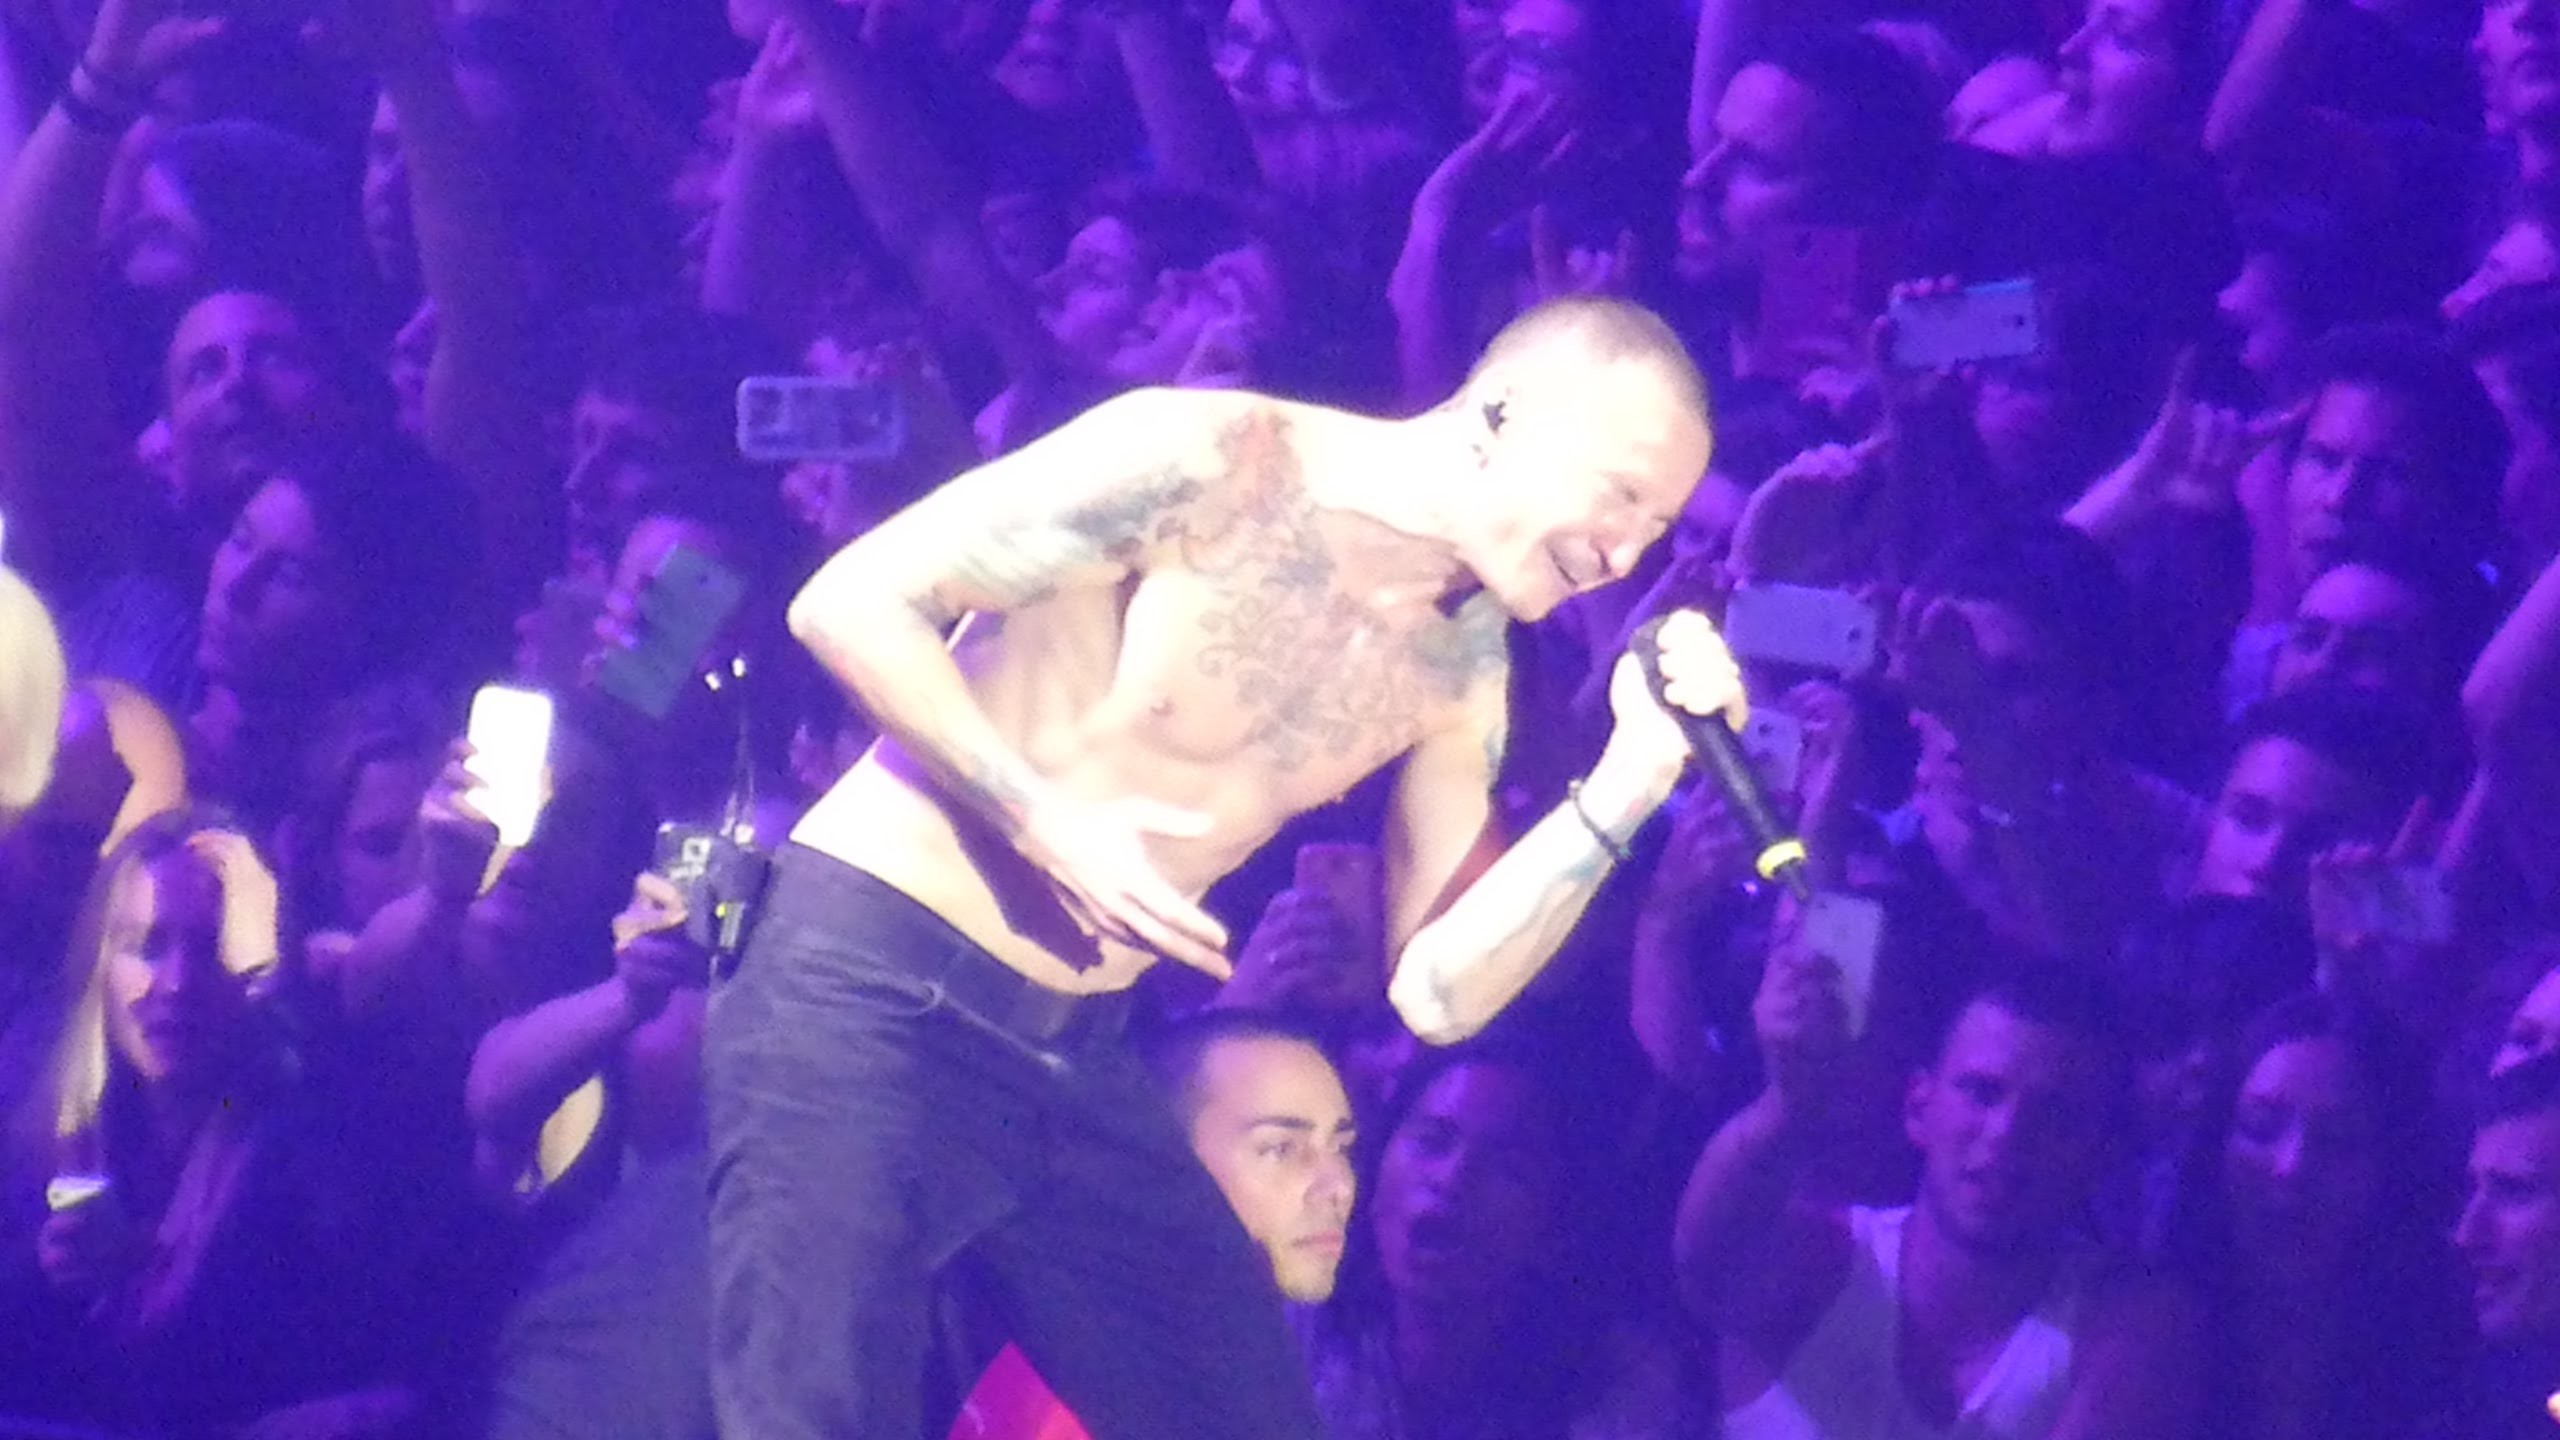 2560x1440 Linkin Park - In The End / Faint - live in Zurich @ Hallenstadion 3.11.14